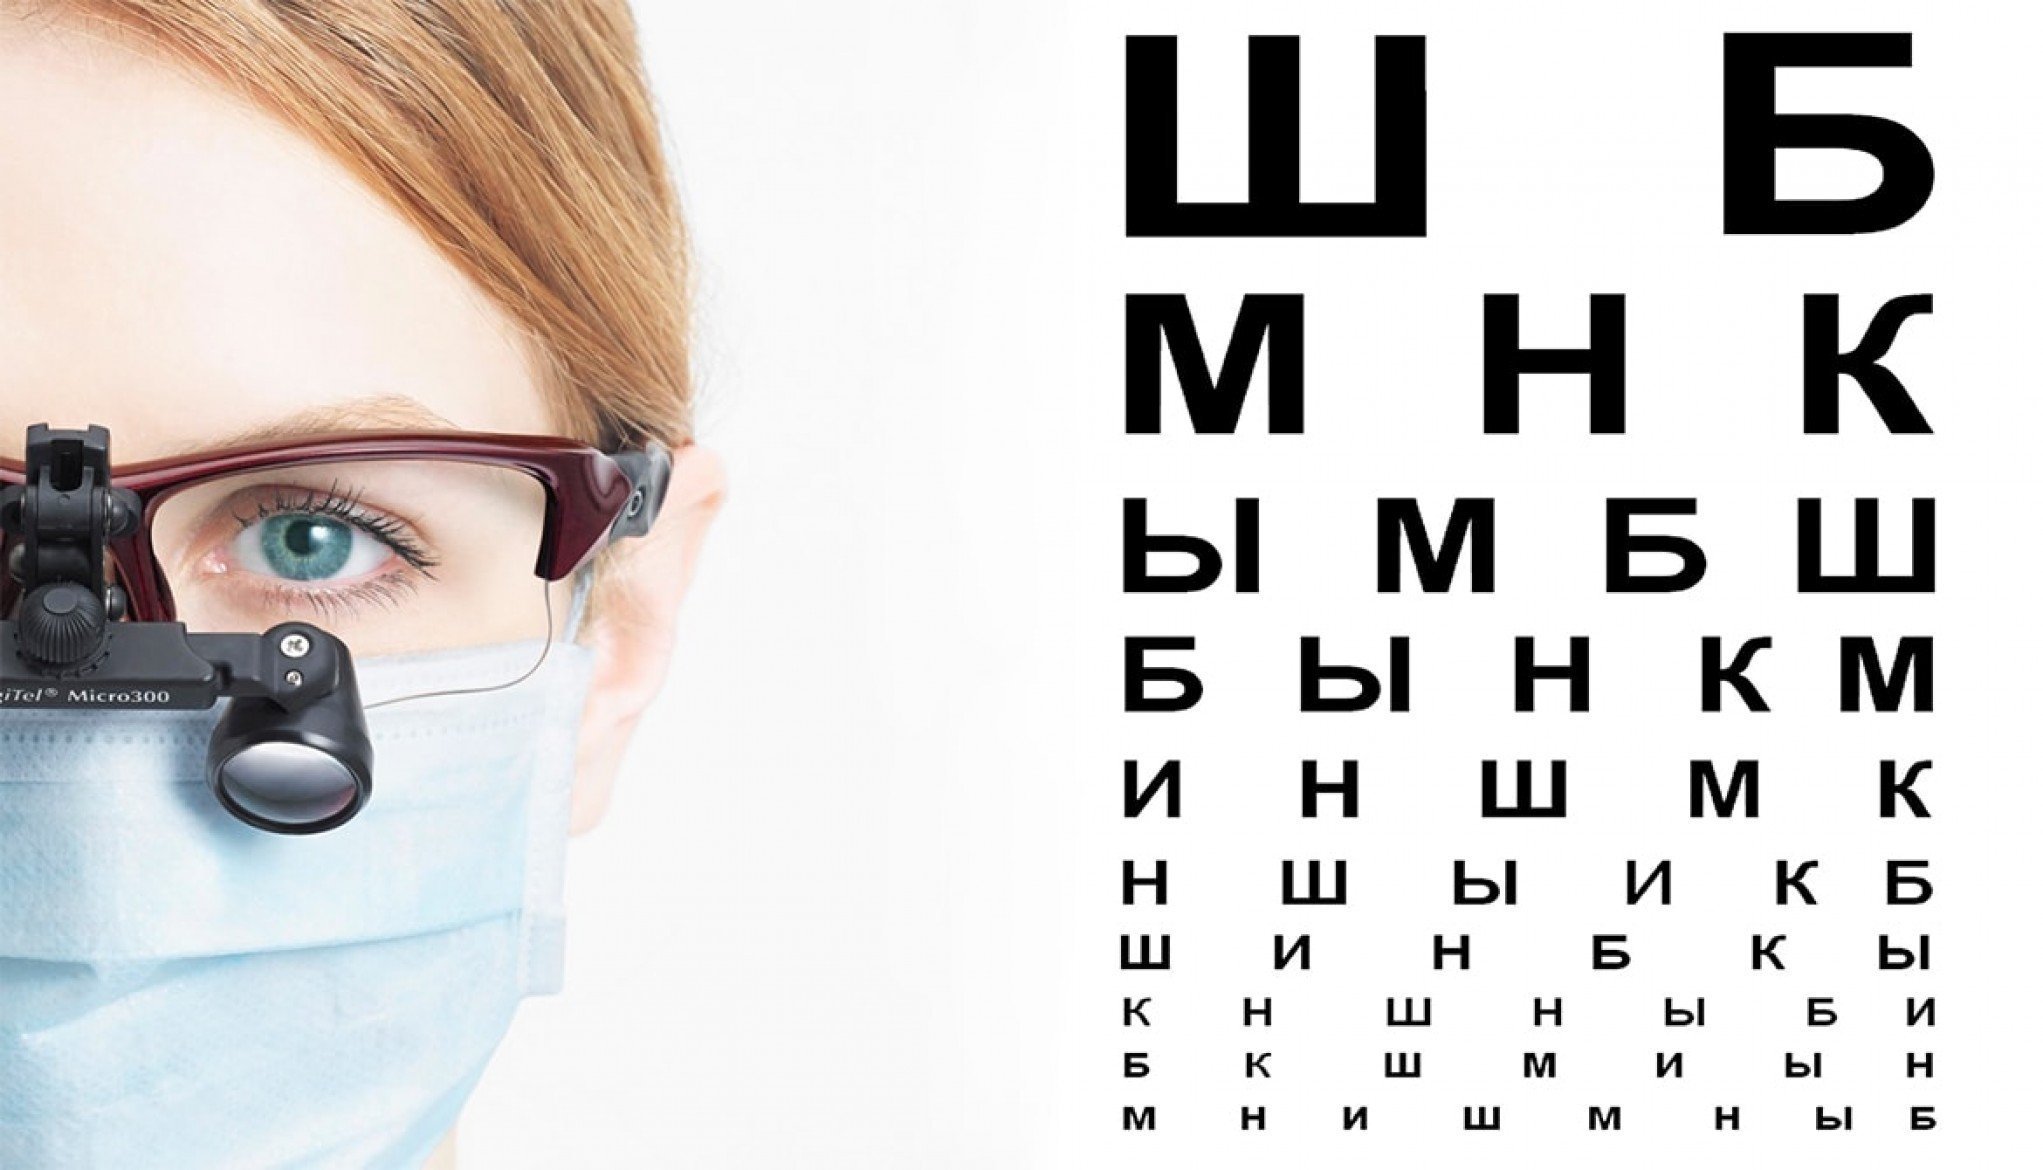 Голодов зрение. Очки офтальмолога. Очки для глаз для зрения. Очки офтальмологические для проверки зрения. Человек у офтальмолога.